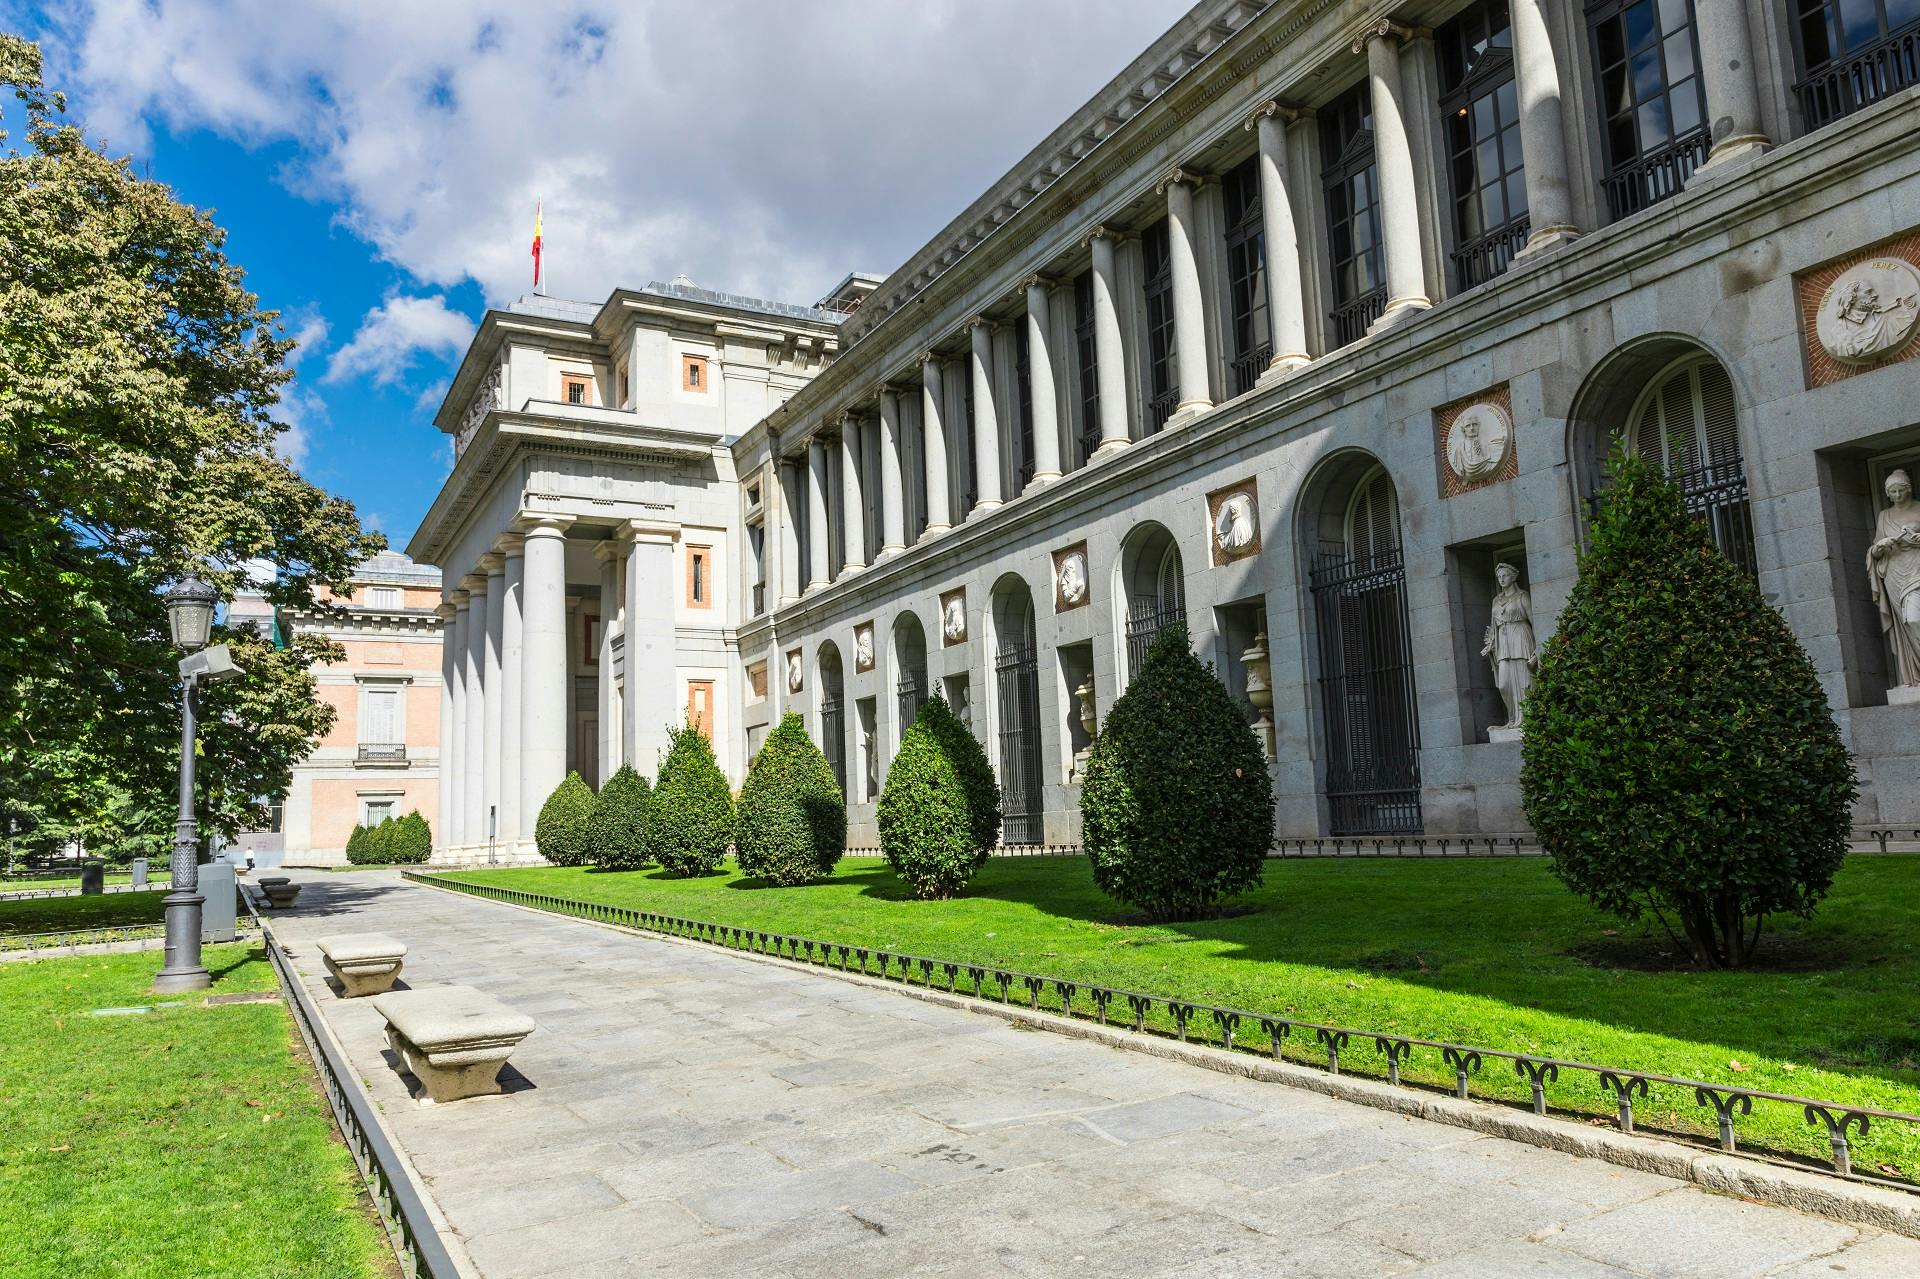 Prado Museum skip-the-line tickets and El Retiro Park guided tour